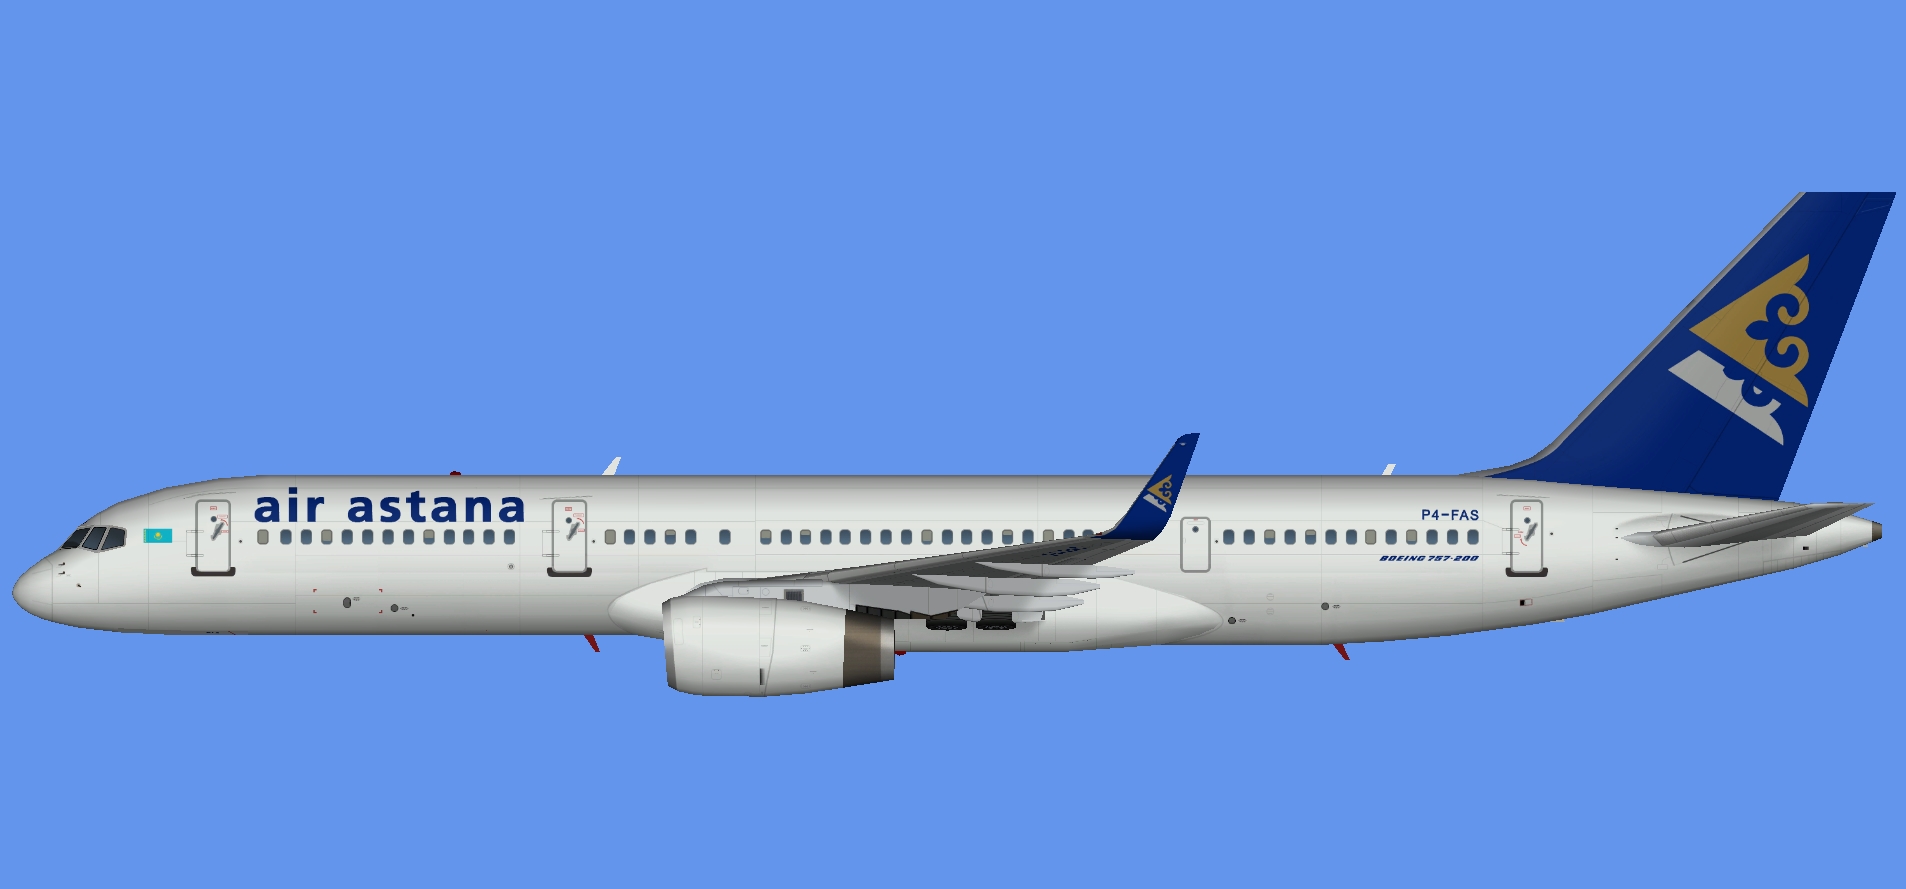 Air Astana Boeing 757 